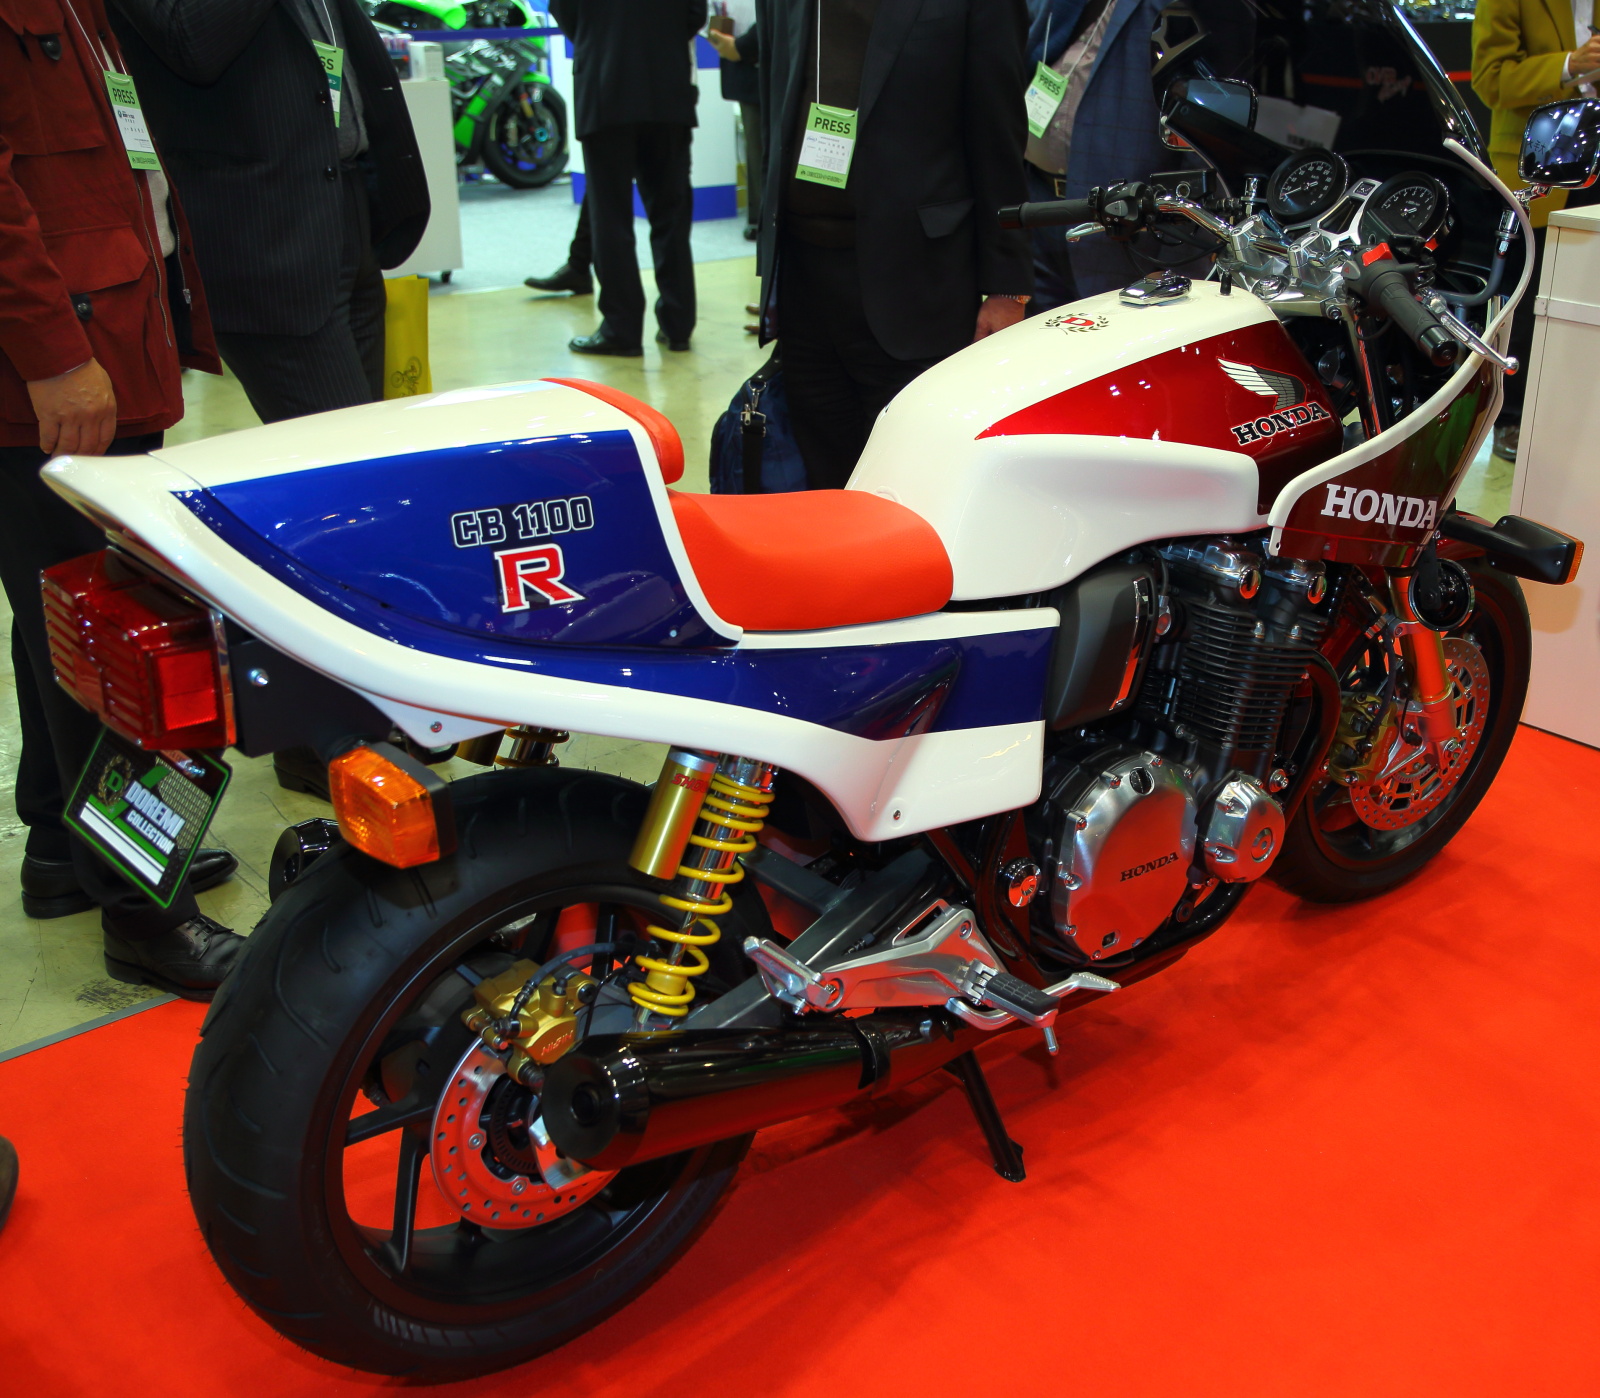 Honda CB1100R kit bike